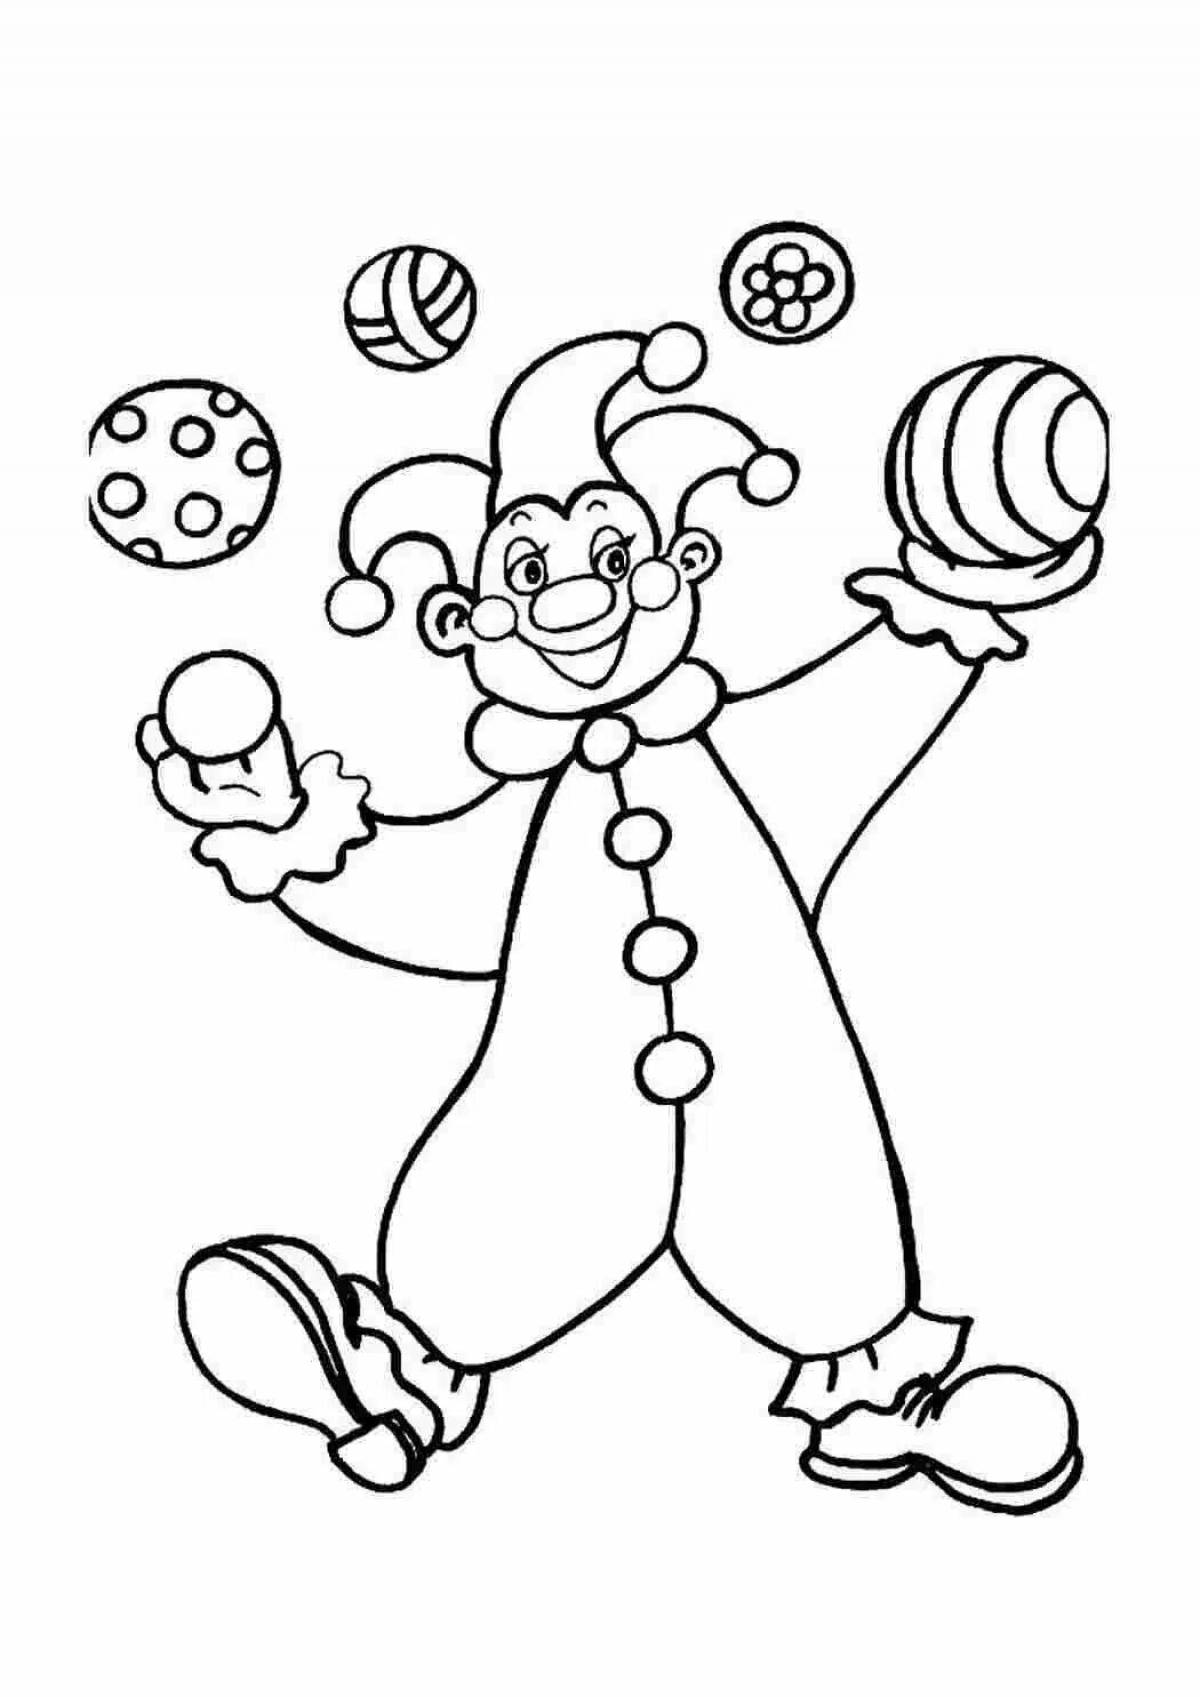 Клоун раскраска для детей 4 5. Клоун раскраска. Клоун для раскрашивания детям. Клоун раскраска для детей. Раскраска весёлый клоун для детей.